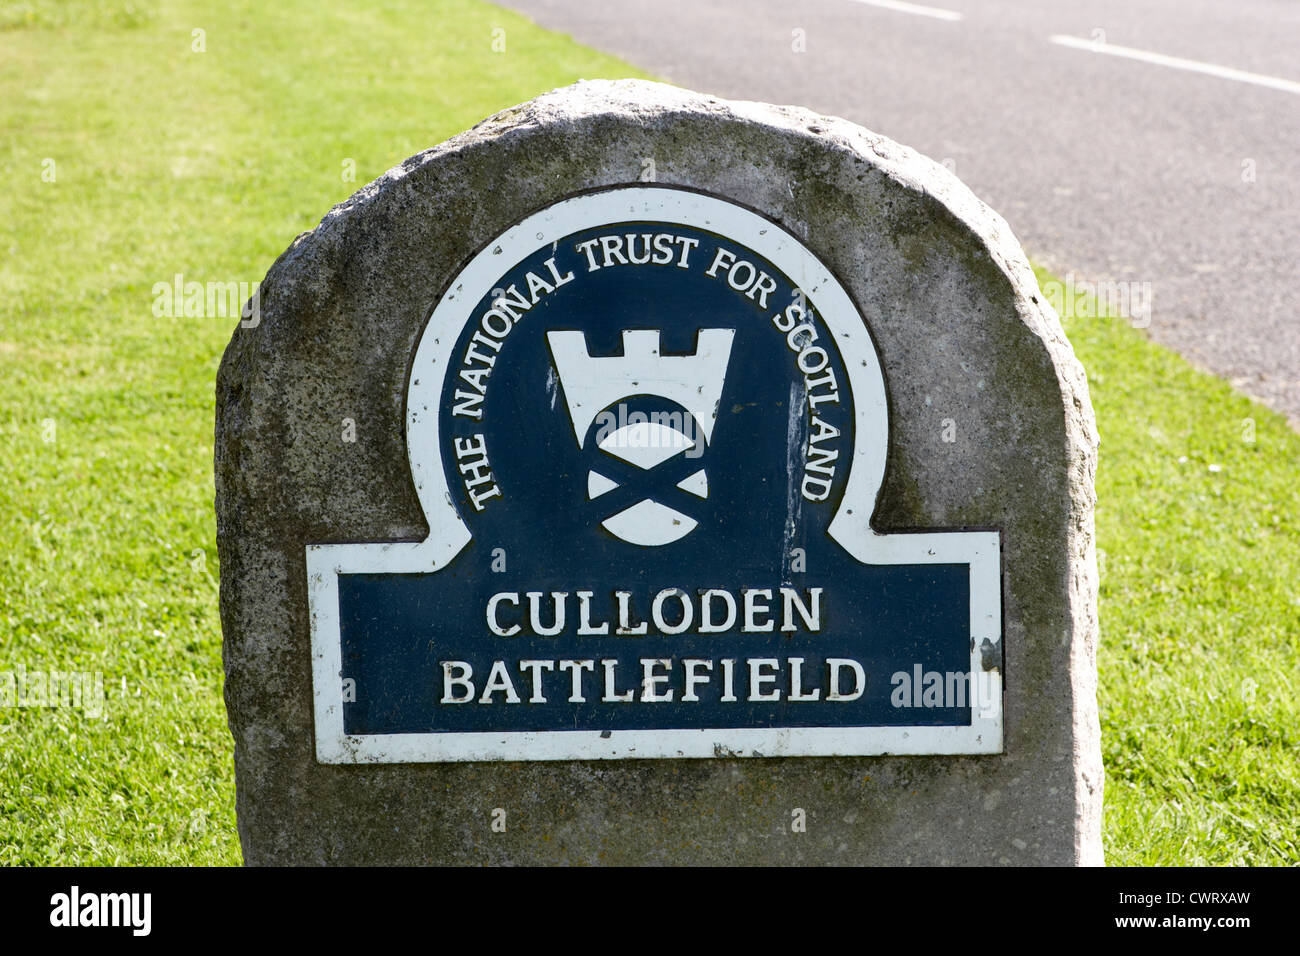 Culloden moor battlefield site highlands scotland Stock Photo